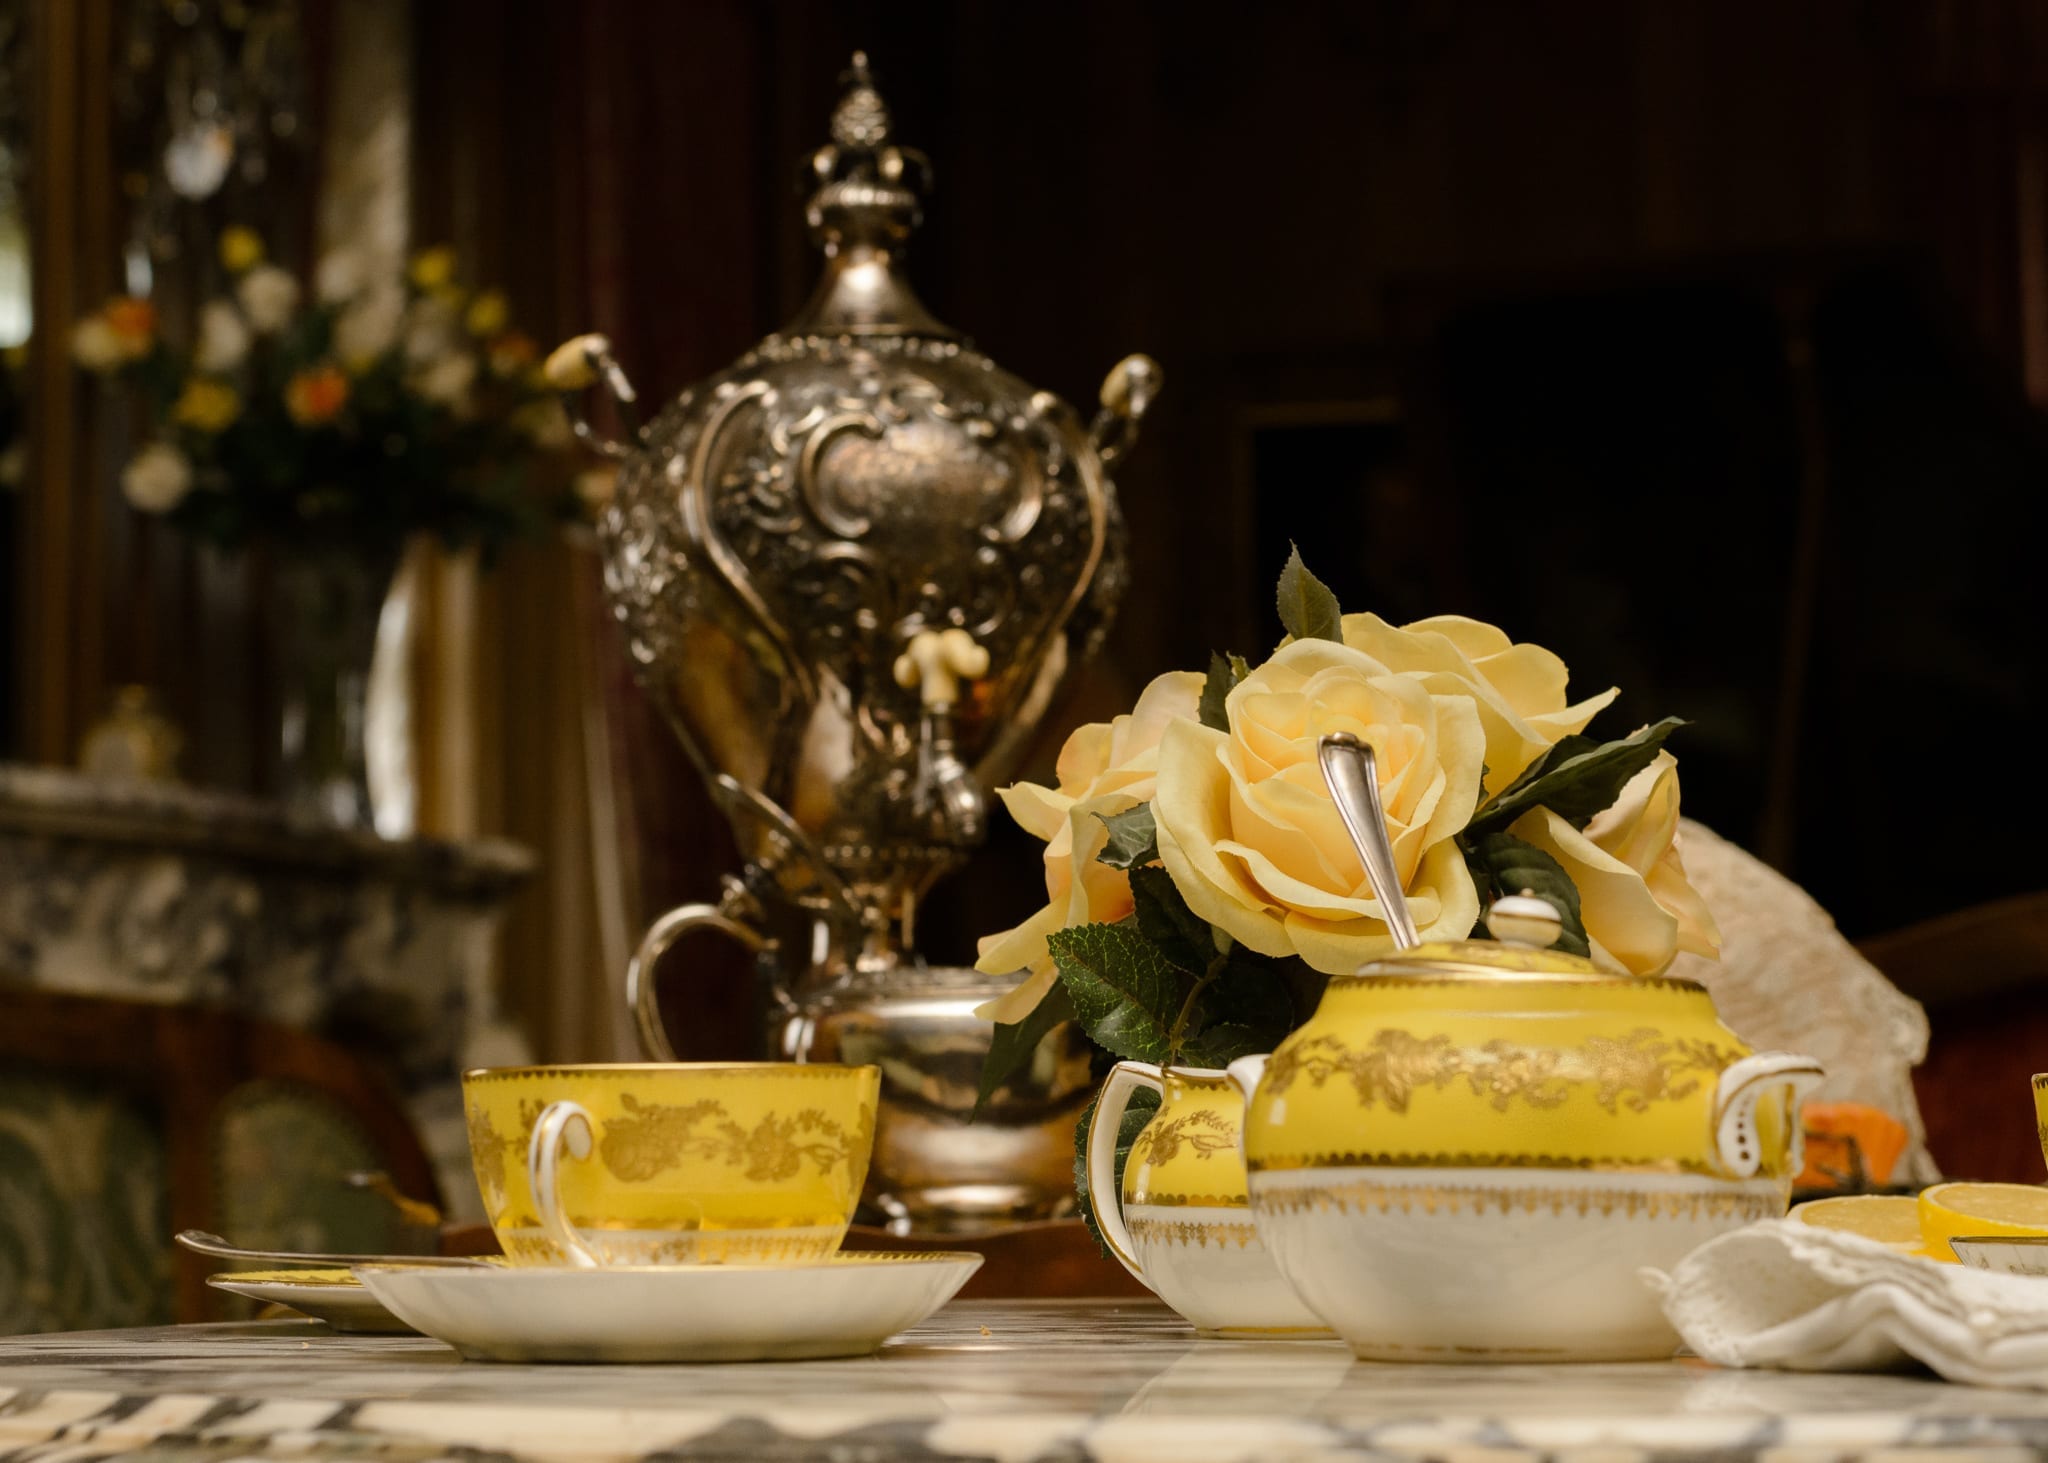 Mother's day tea set at Parkwood Estate